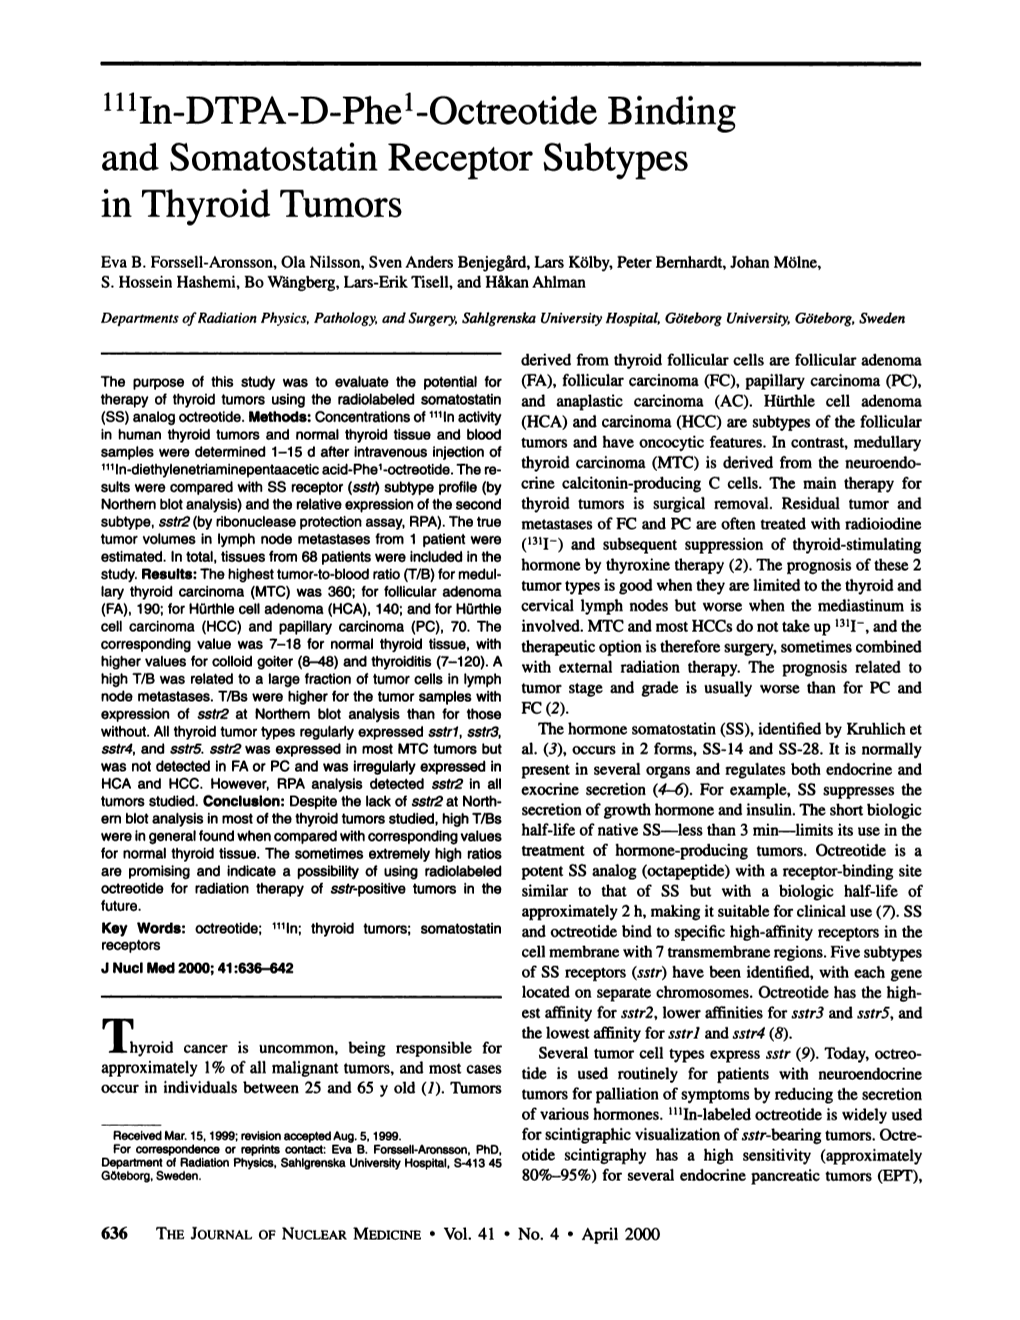 And Somatostatin Receptor Subtypes in Thyroid Tumors